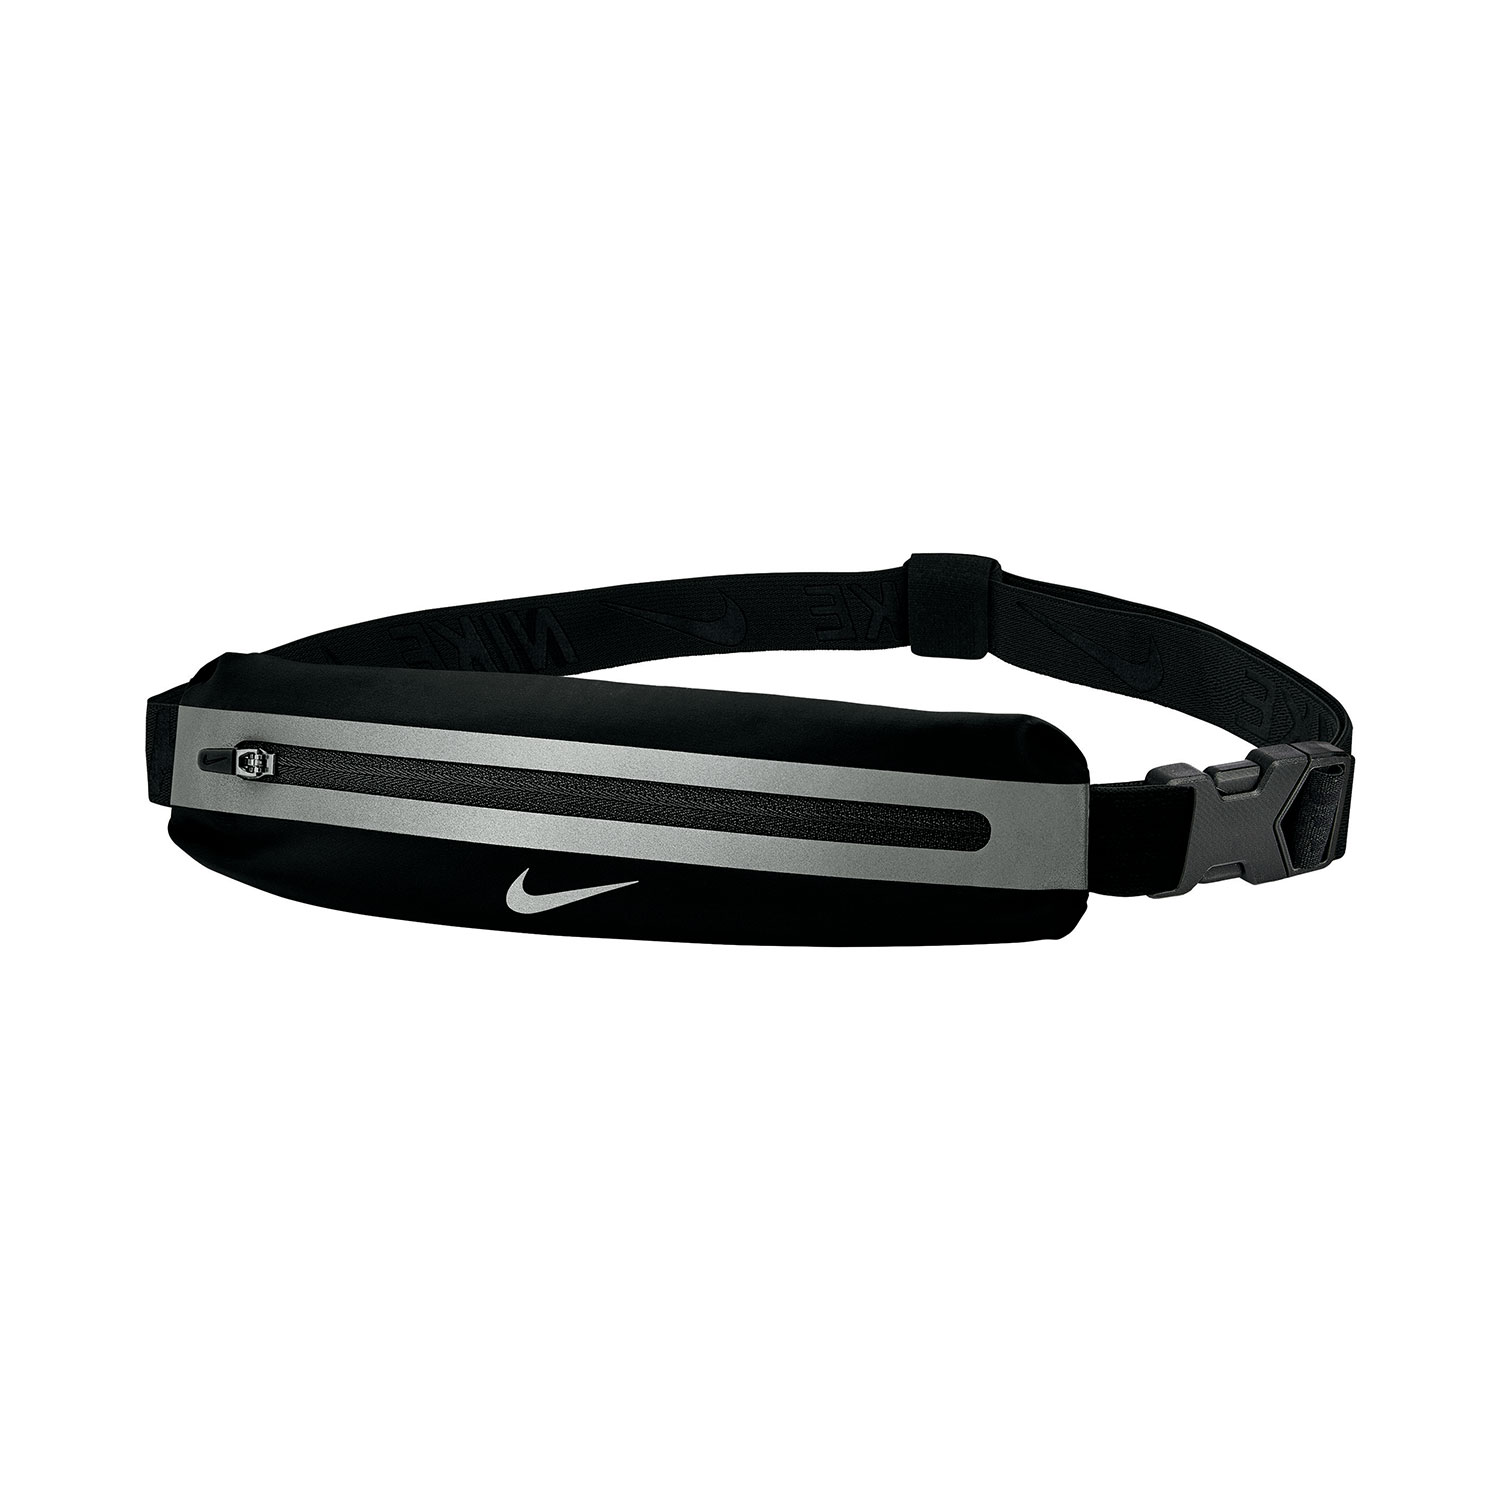 Nike Slim 3.0 Paquete de Cintura - Black/Silver